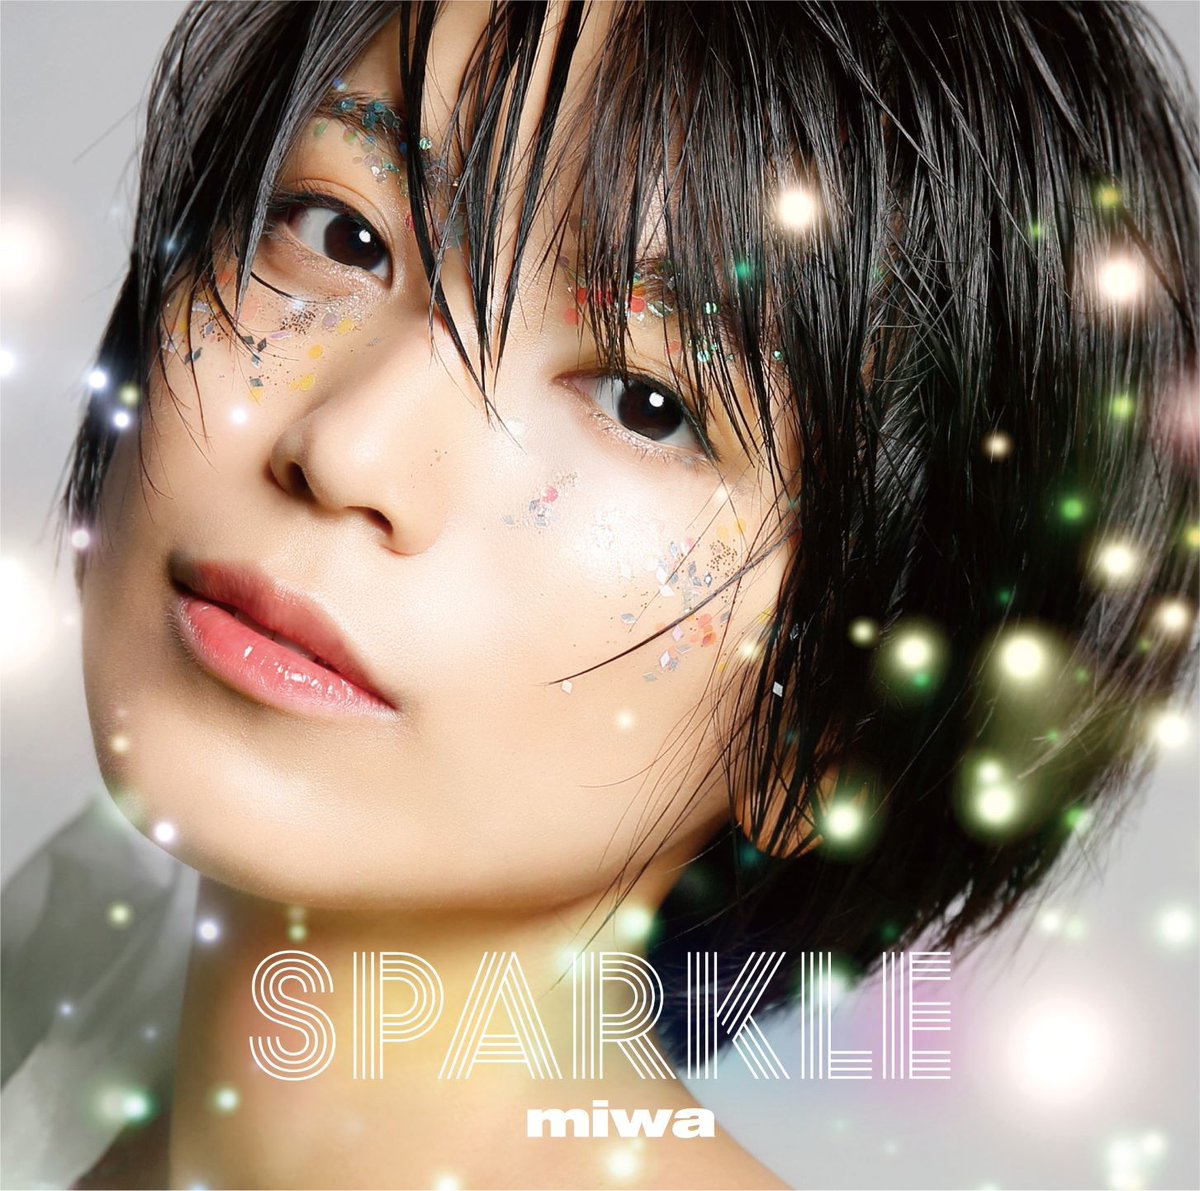 『miwa - Aye 歌詞』収録の『Sparkle』ジャケット